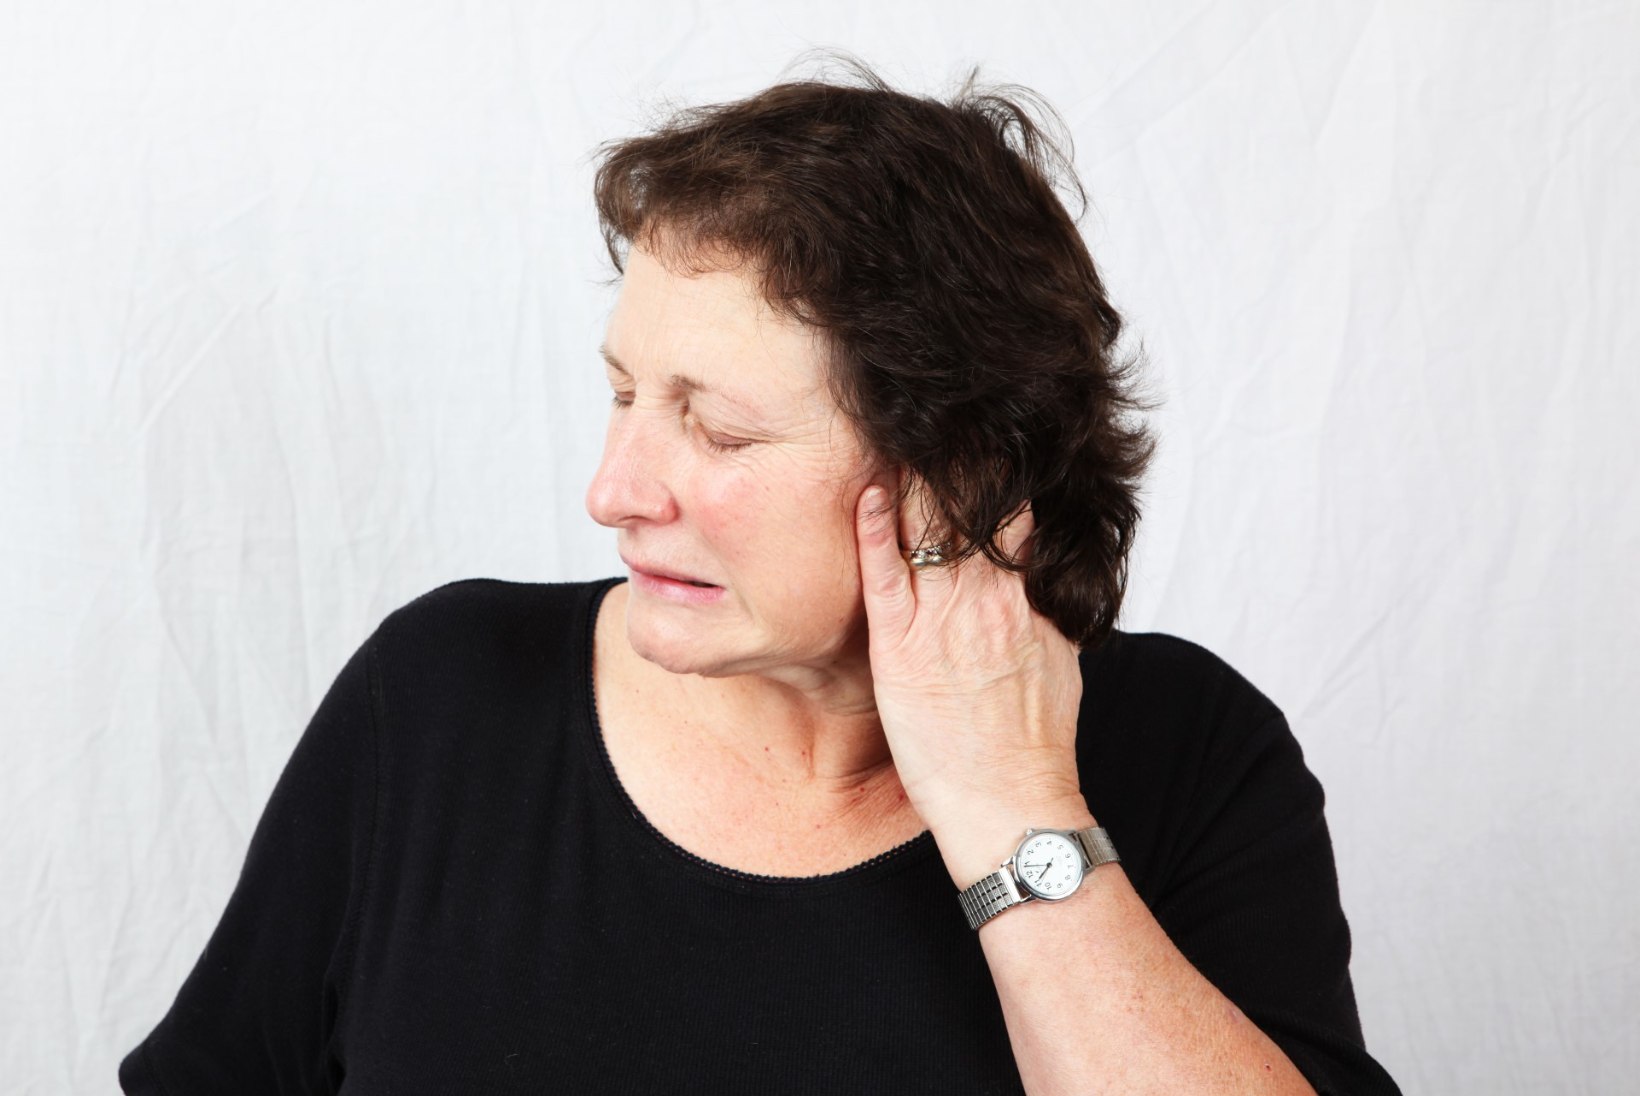 ARST VASTAB: miks kõrva kuulmekäik kuivab ja on valus?